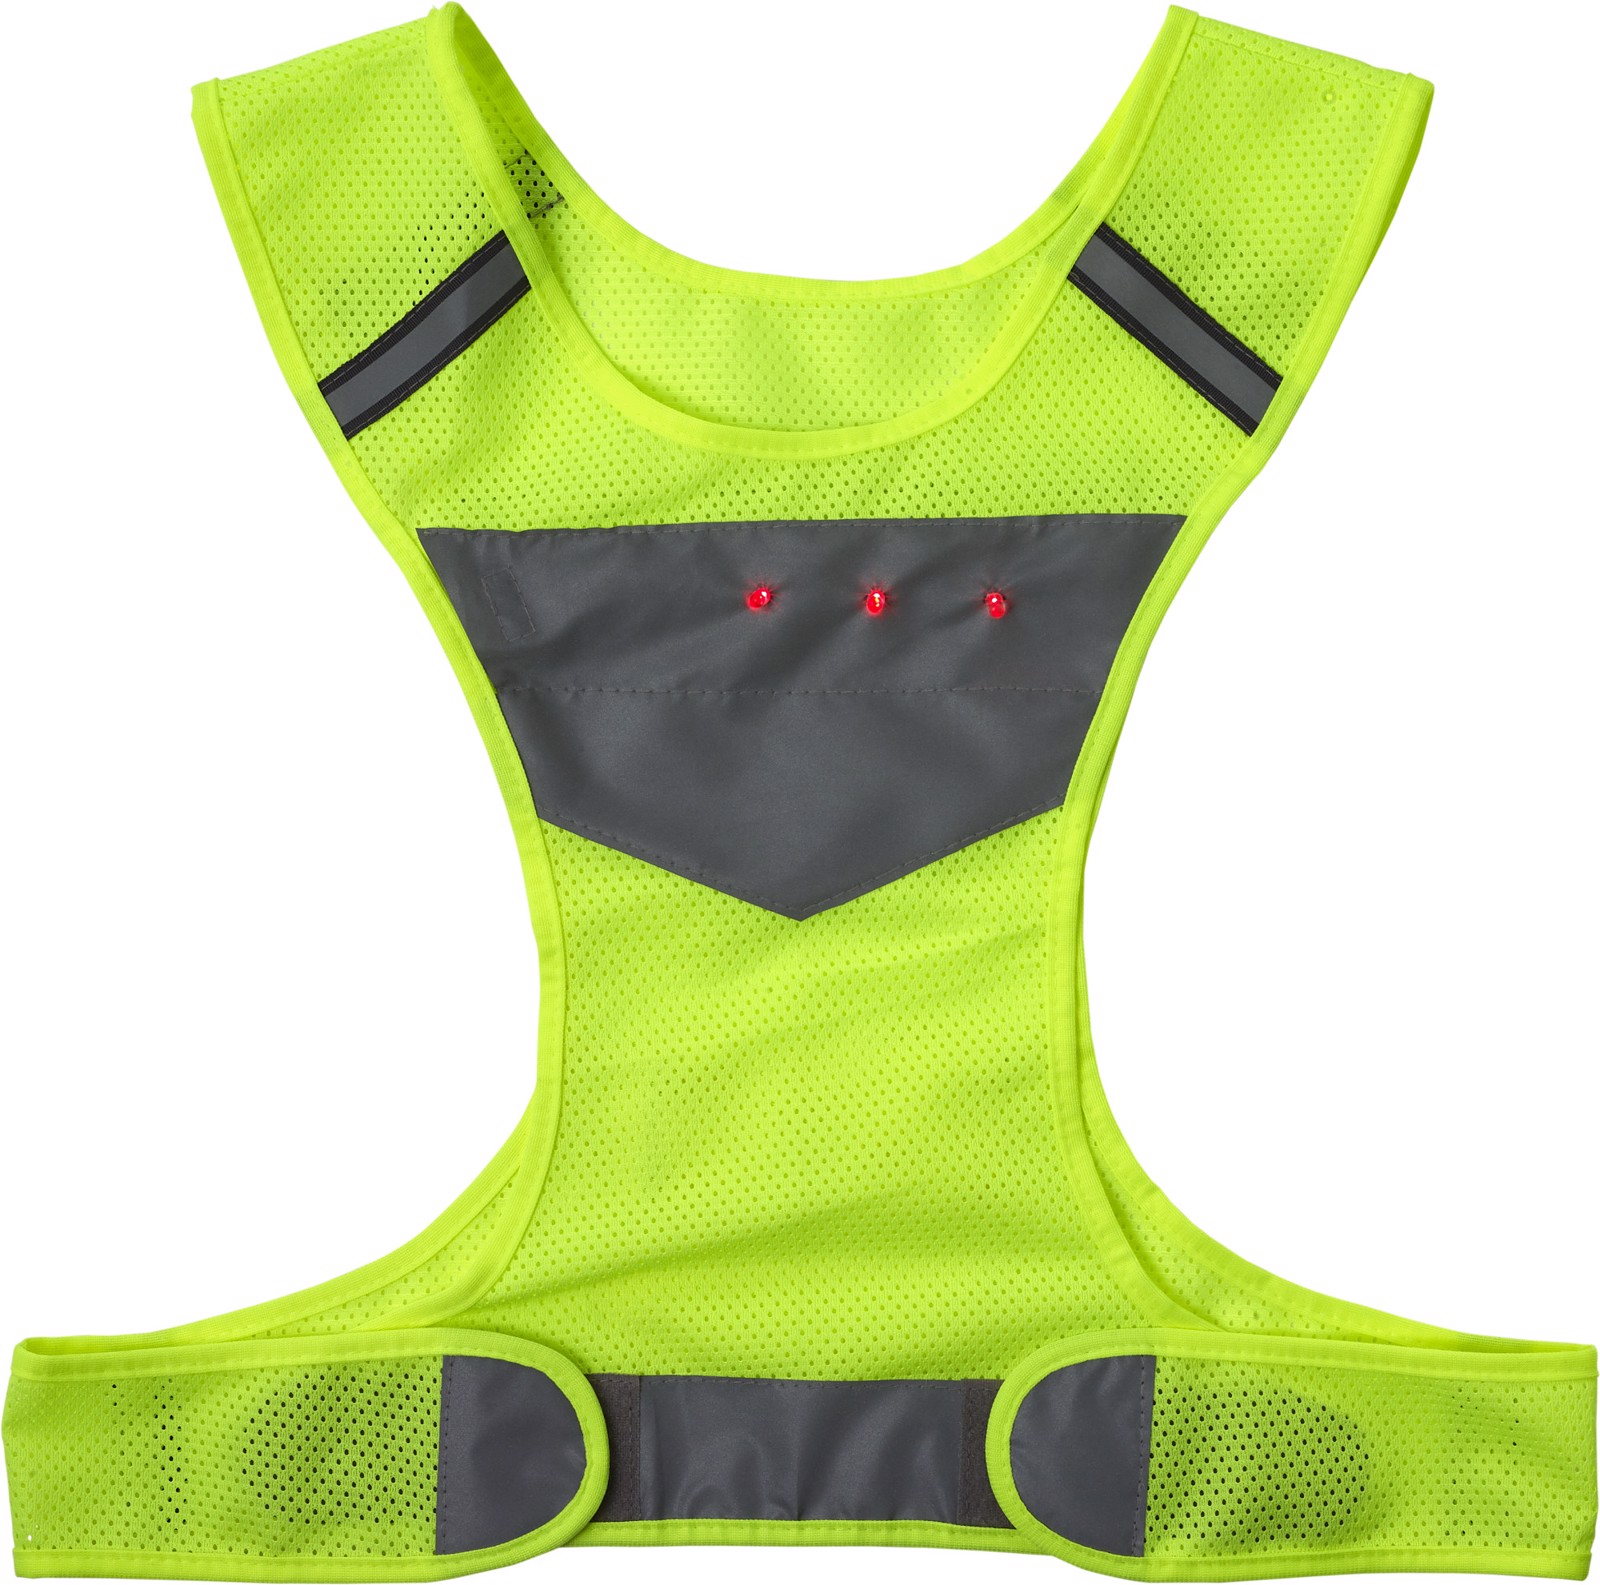 Nylon (600D) safety vest